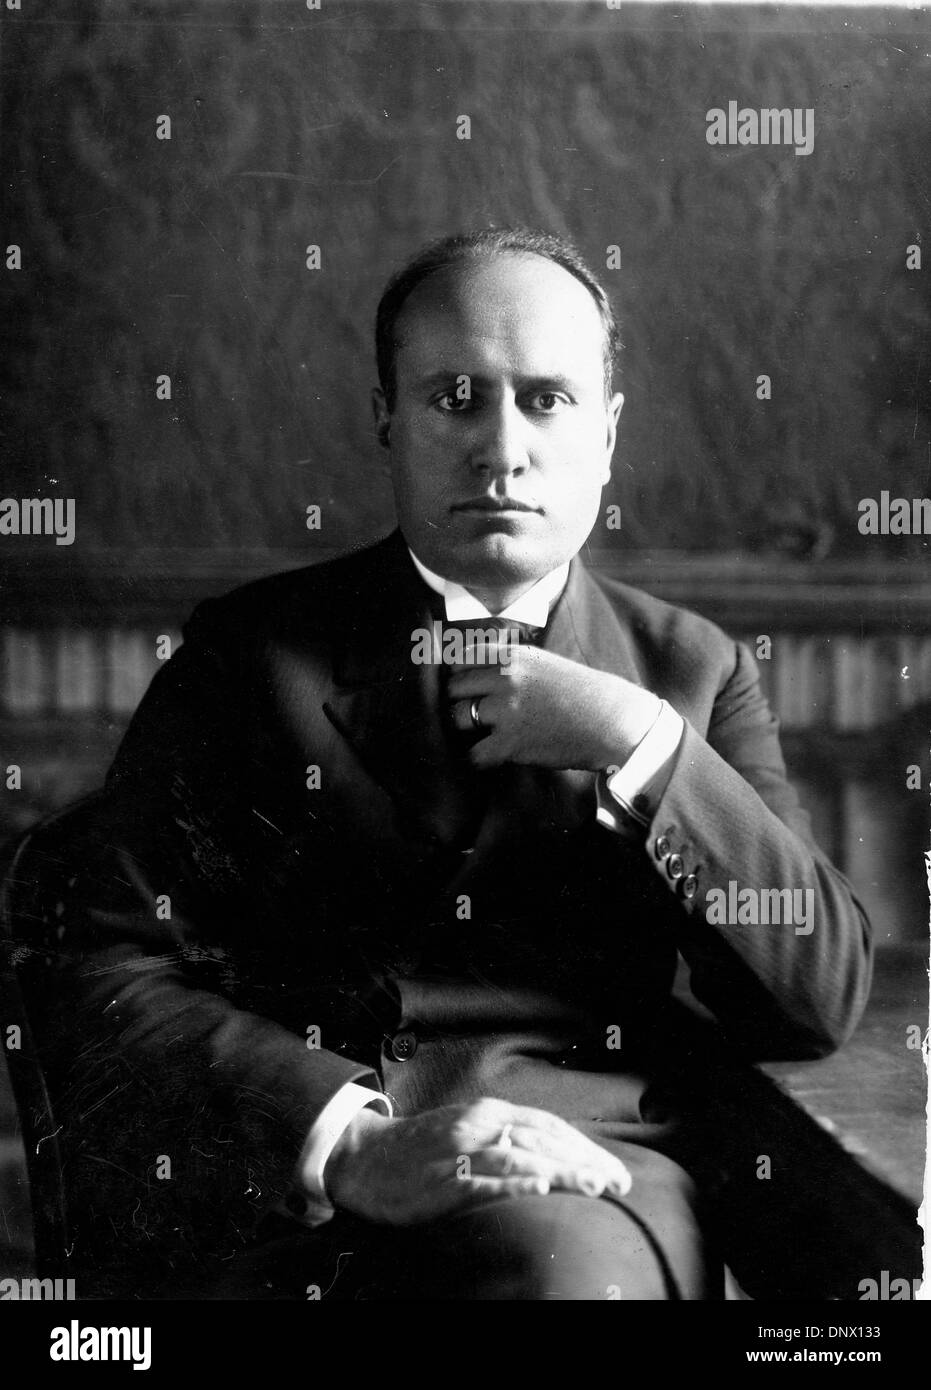 27 avril 1929 - Rome, Iraly - Benito Mussolini (1883-1945) le dictateur italien et leader du mouvement fasciste à son bureau au ministère des Affaires étrangères. (Crédit Image : © Keystone Photos/ZUMAPRESS.com) Banque D'Images